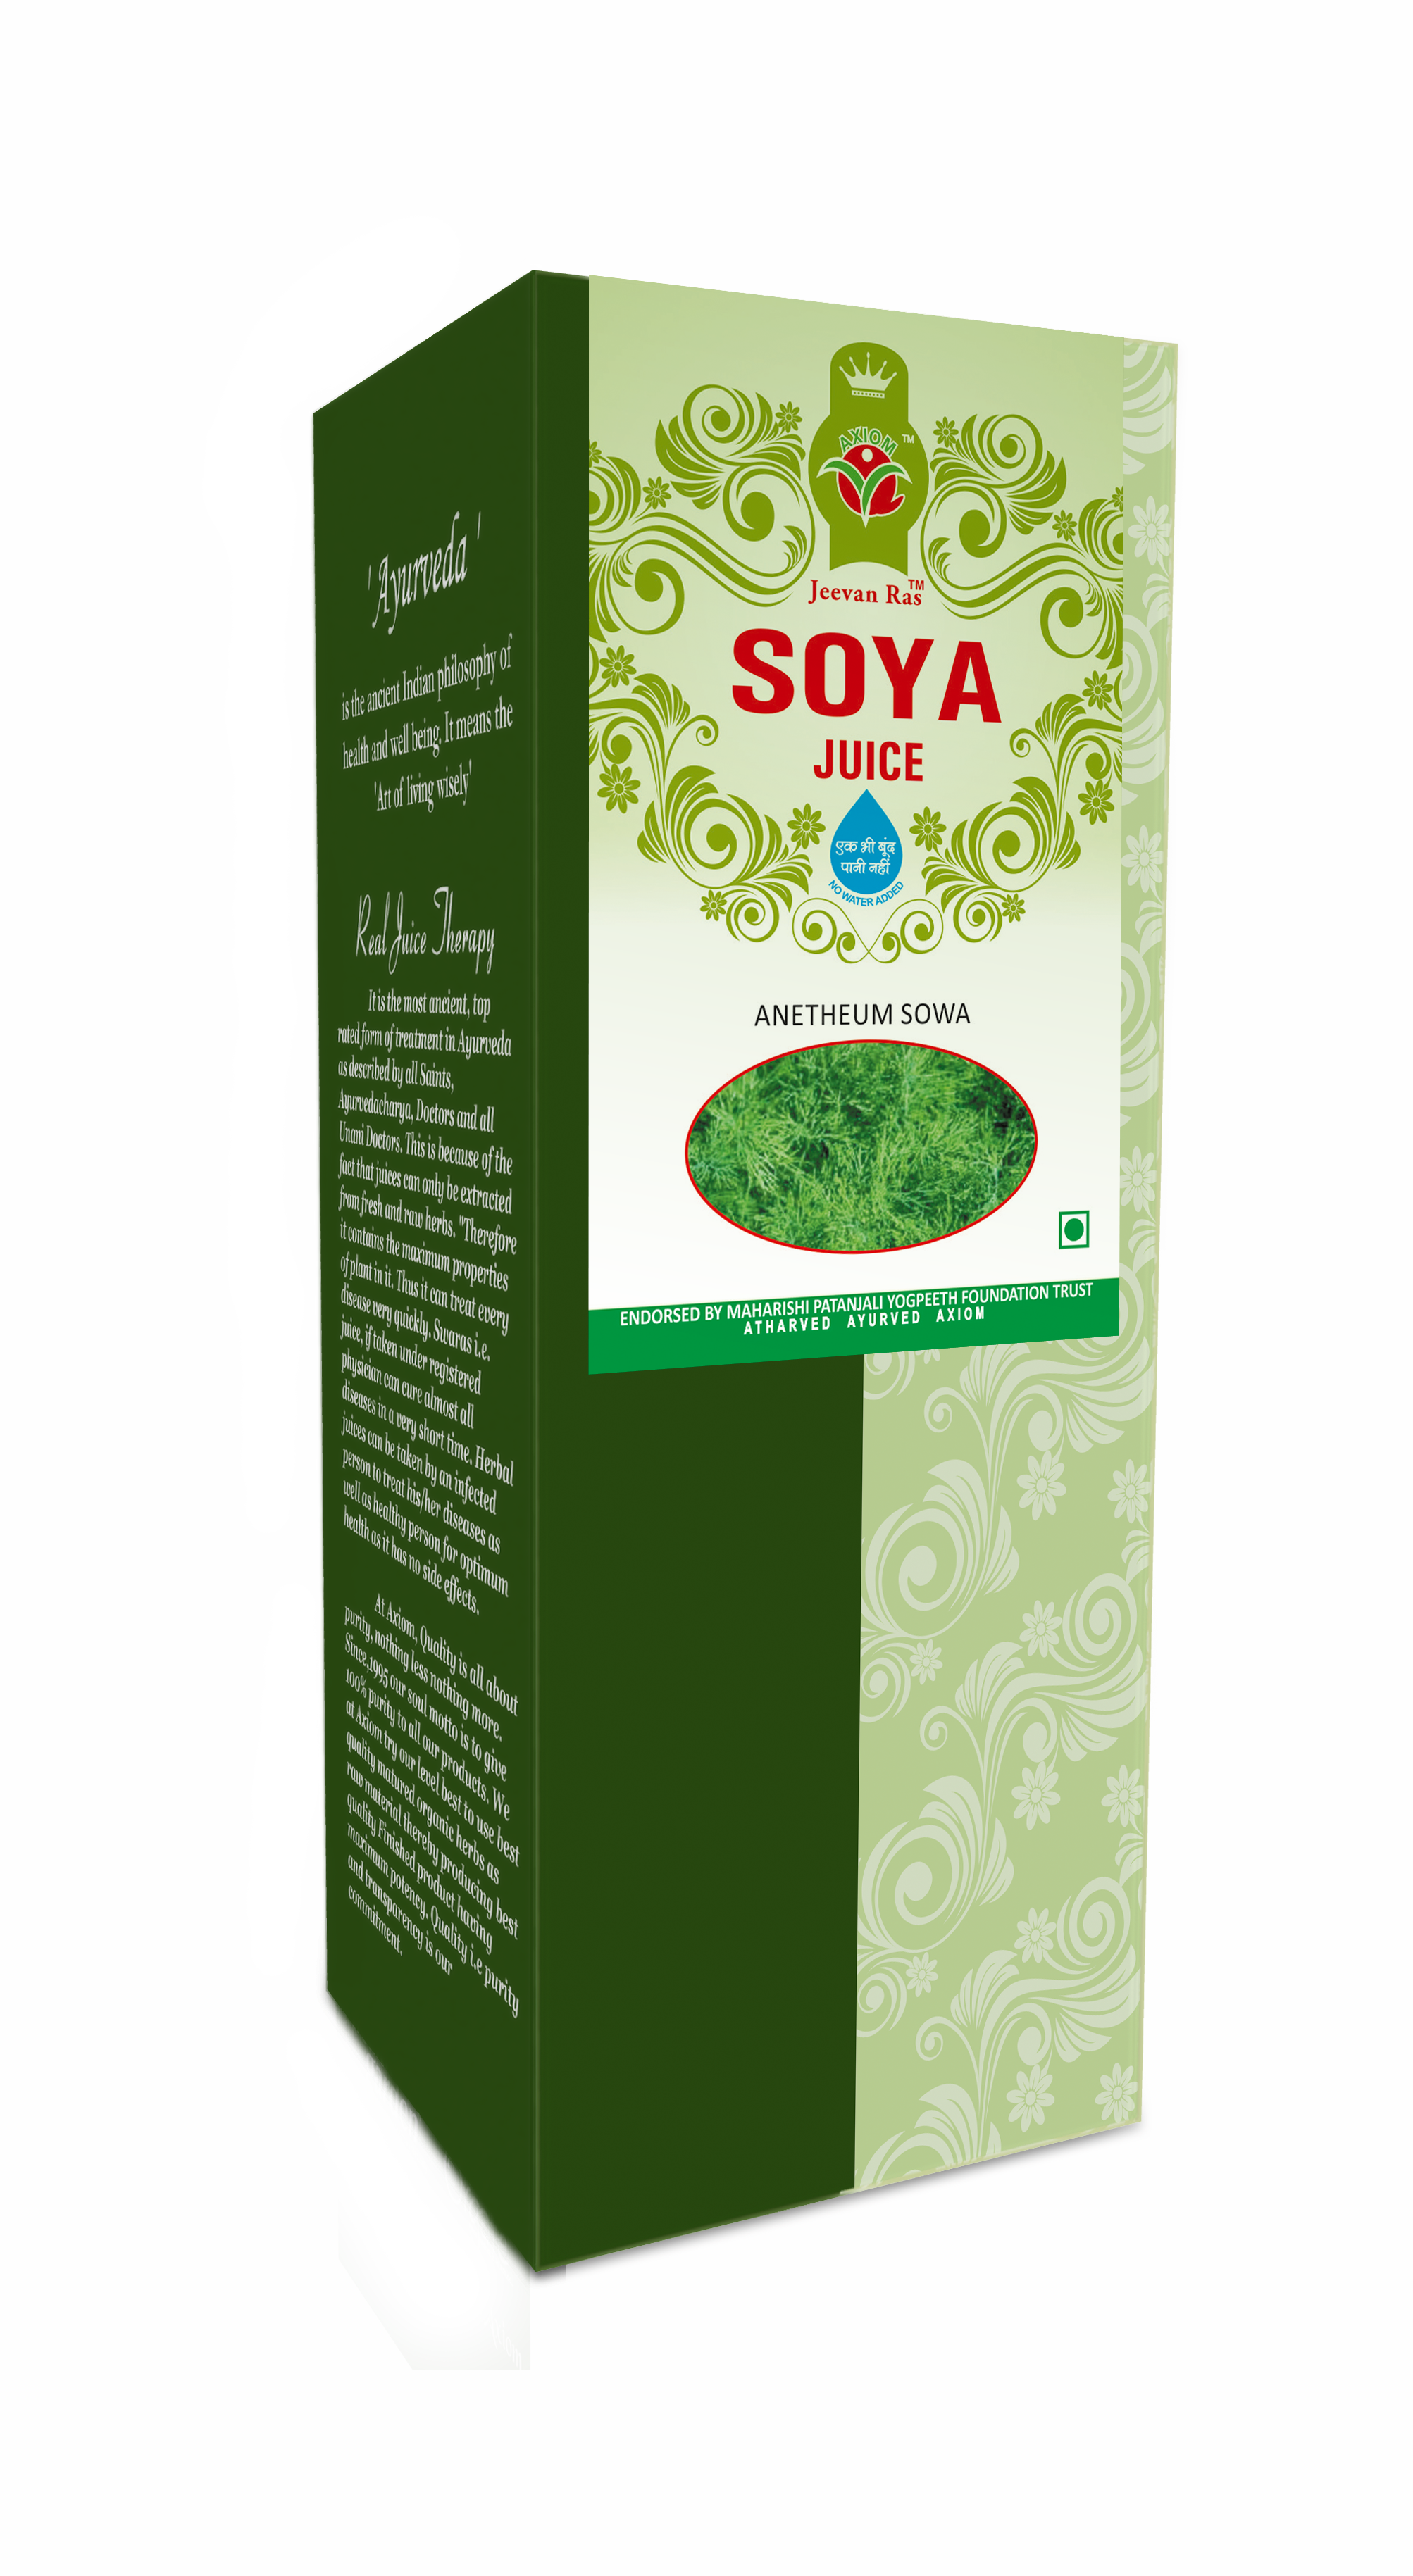 Buy Axiom Soya Juice at Best Price Online